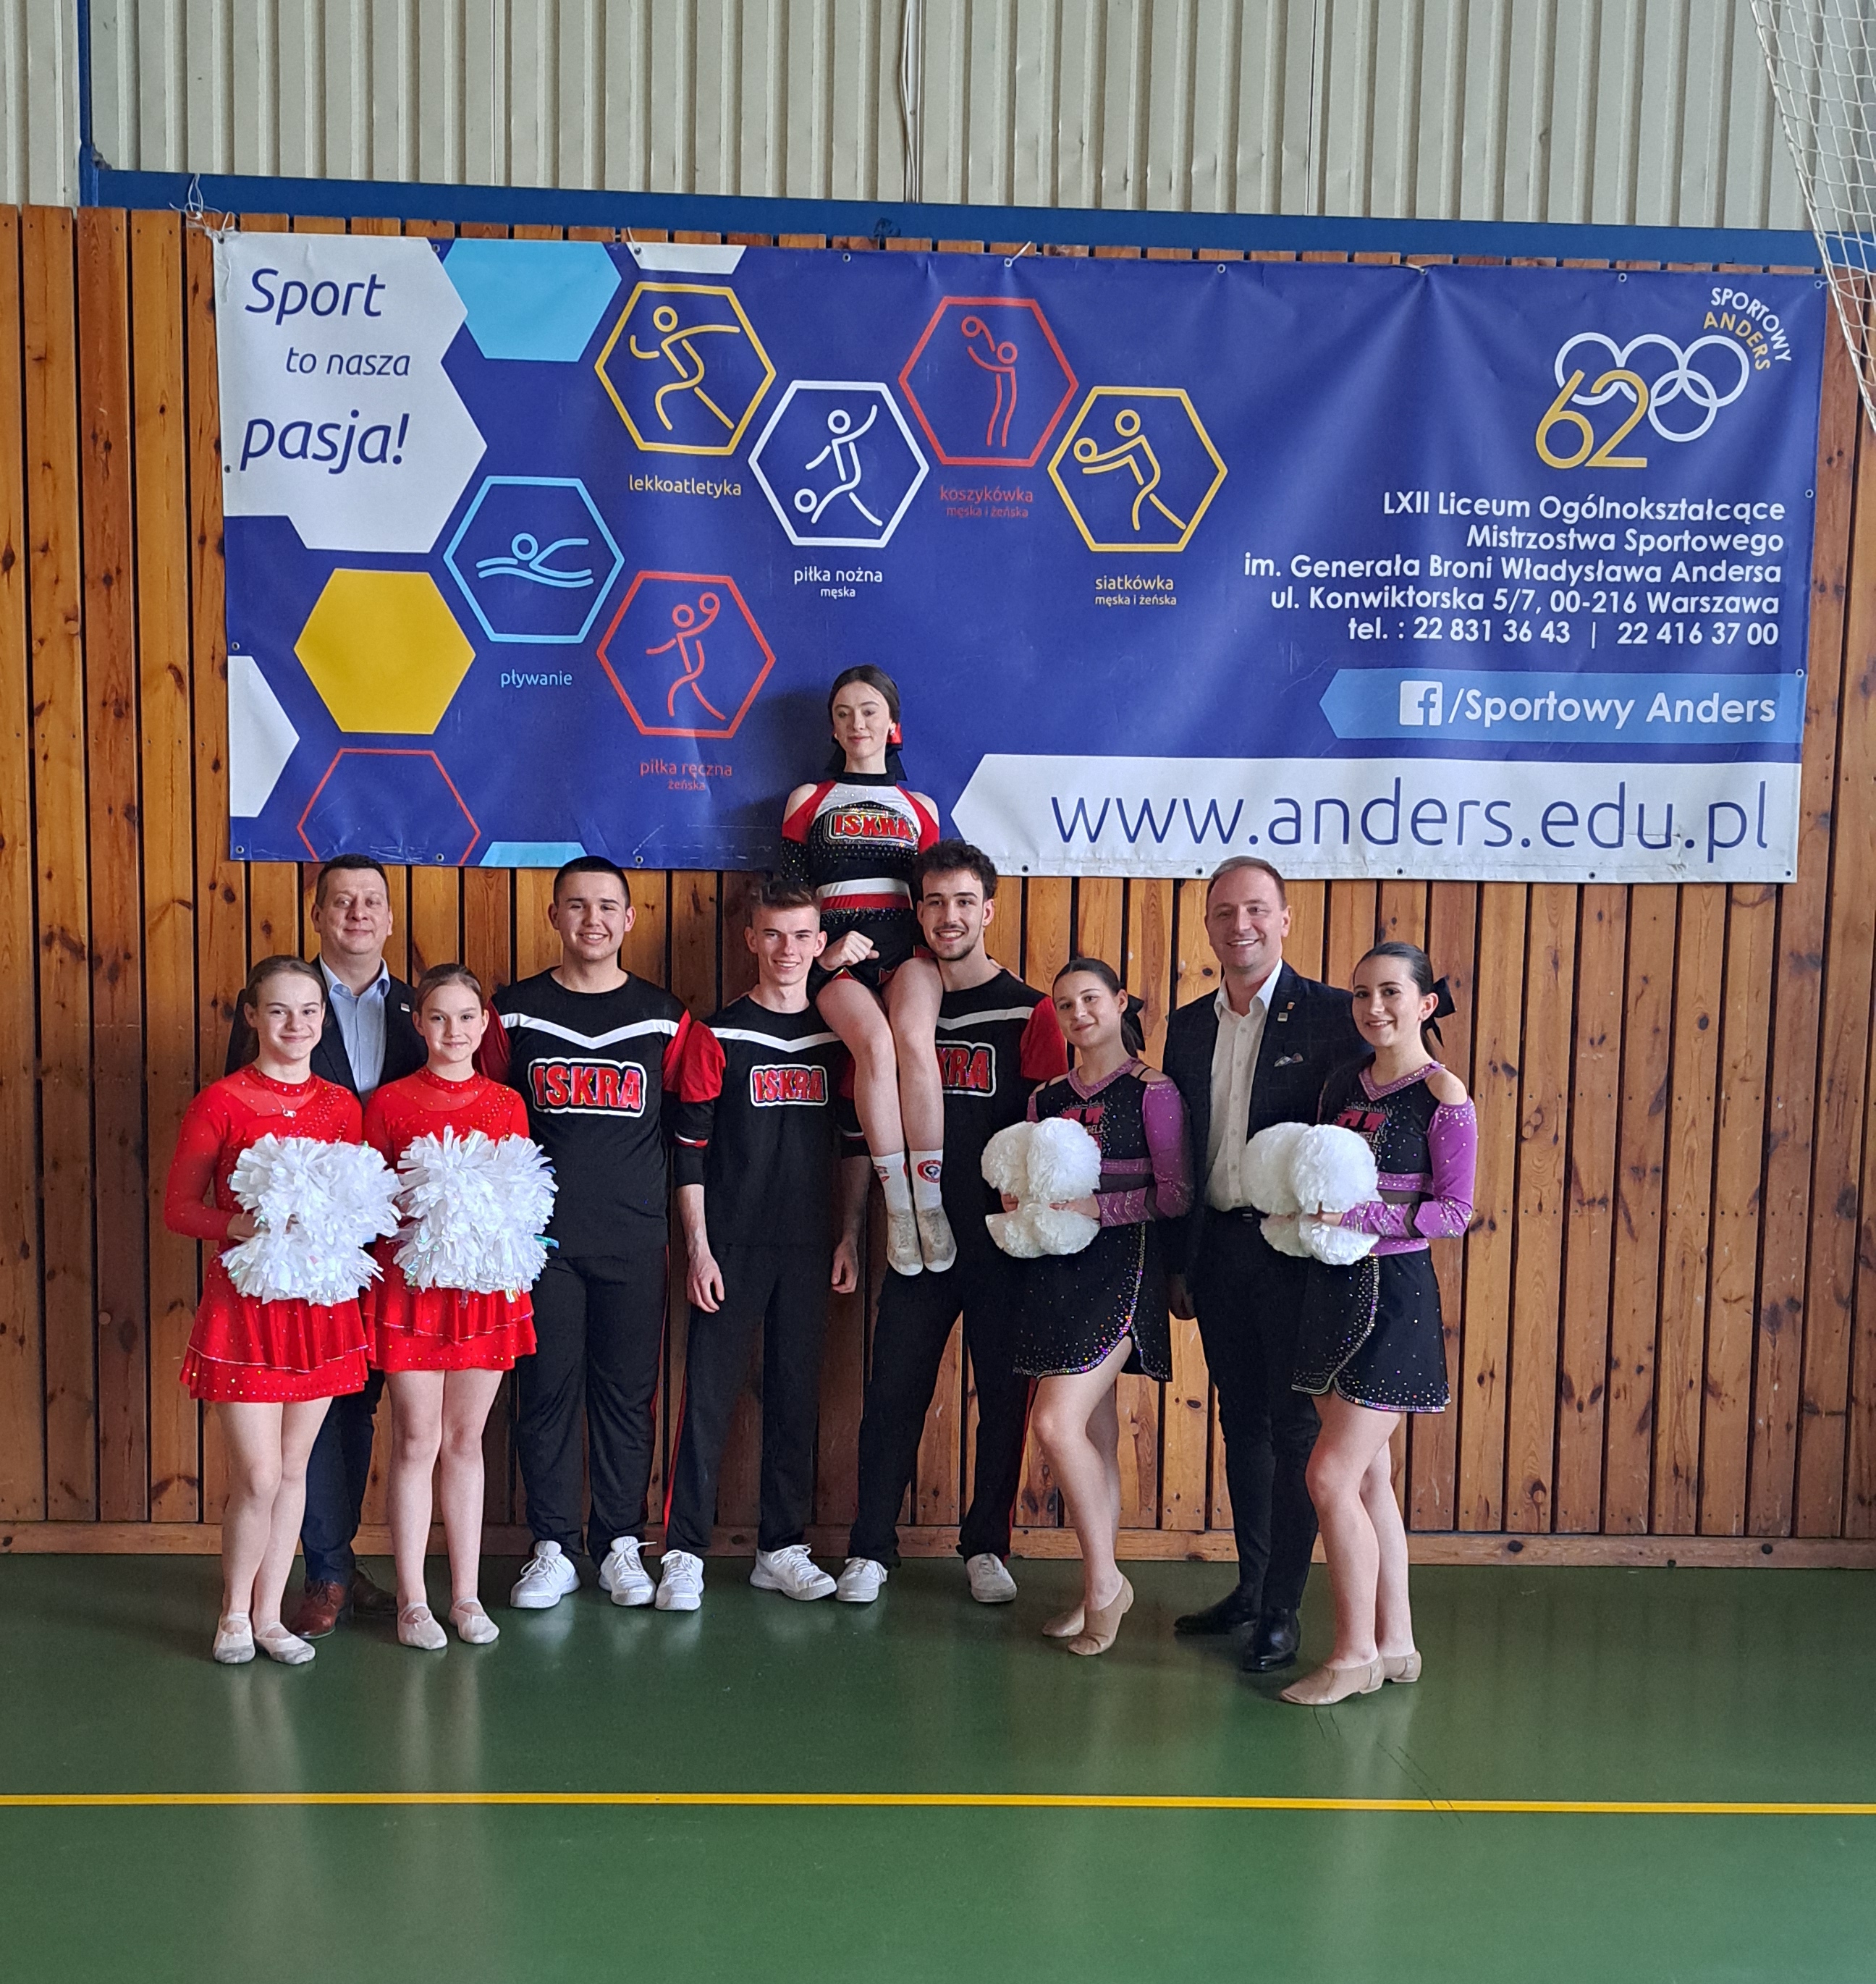 Klasy sportowe o profilu cheerleadingu w Warszawie